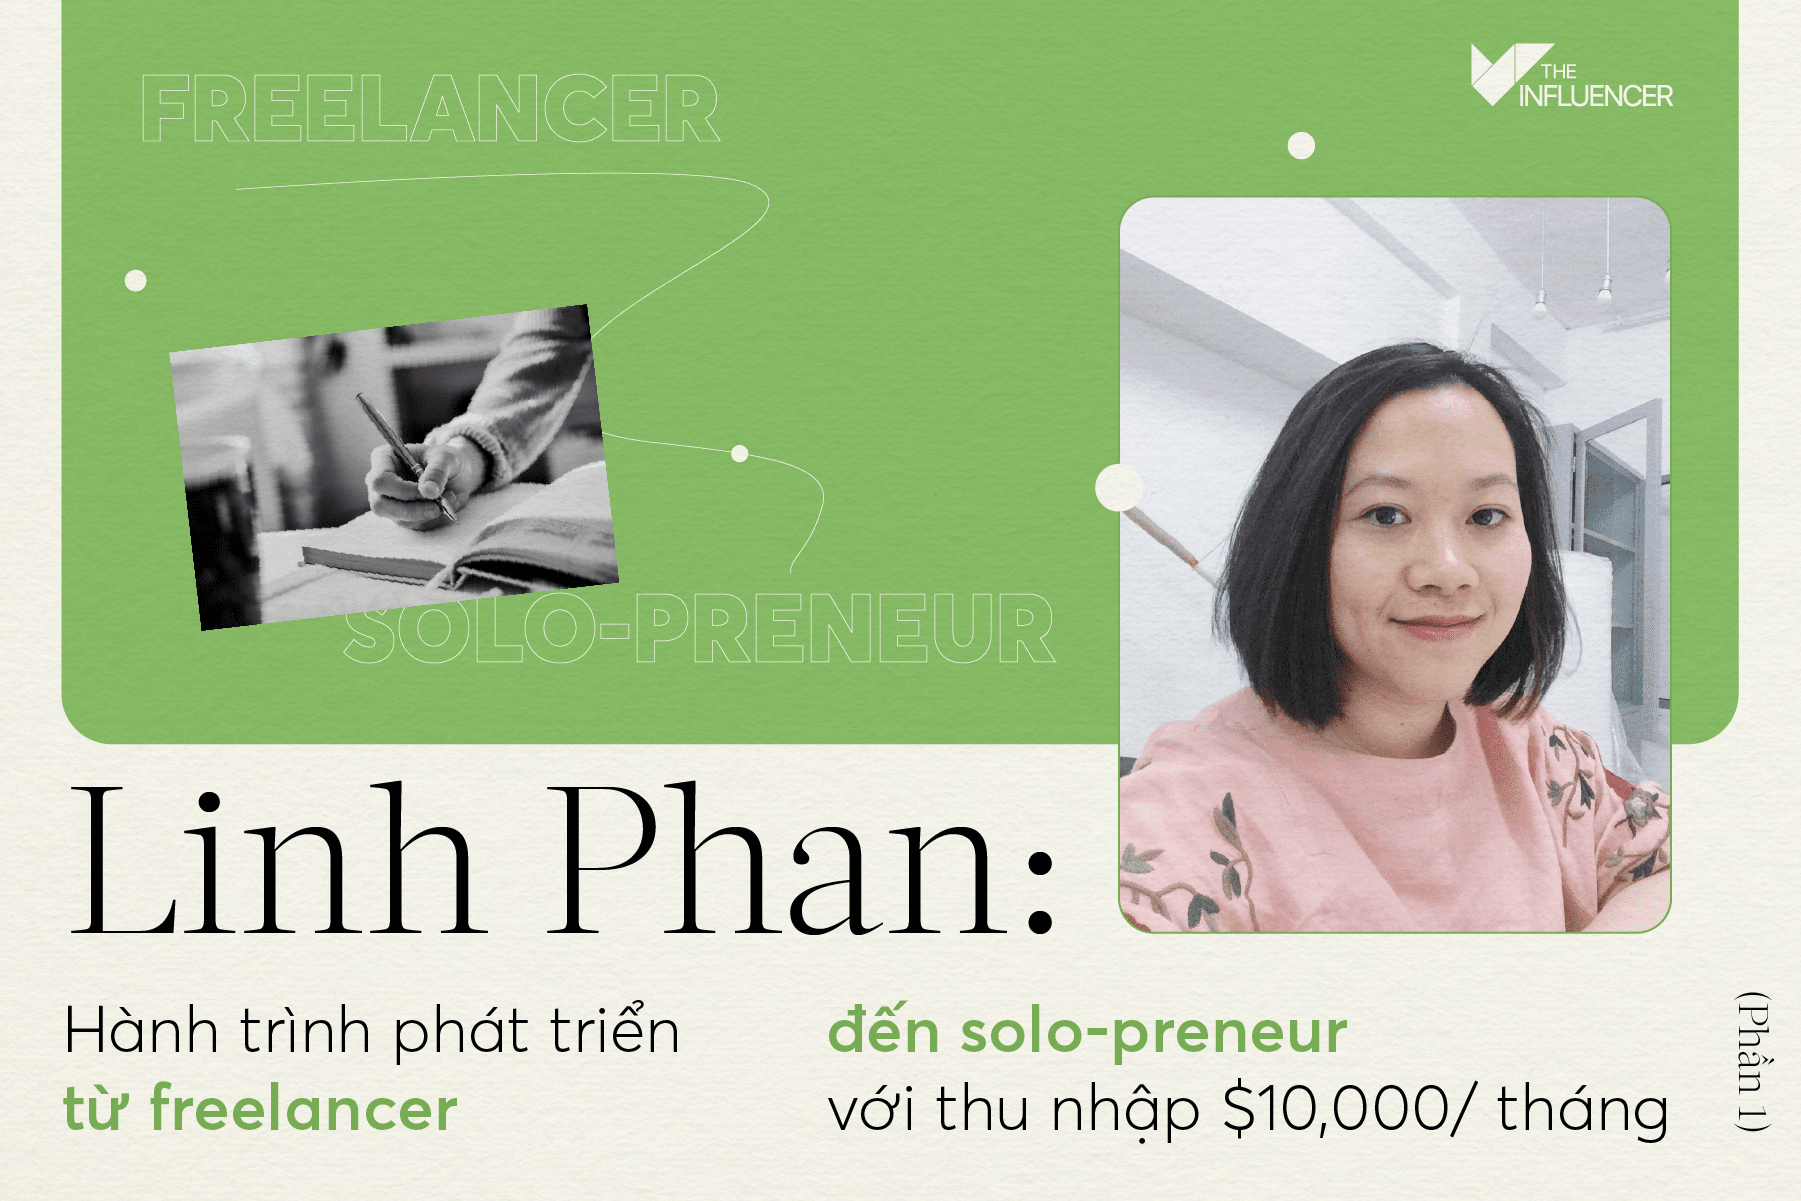 Linh Phan: Hành trình phát triển từ freelancer đến solo-preneur với thu nhập $10,000/ tháng (Phần 1)